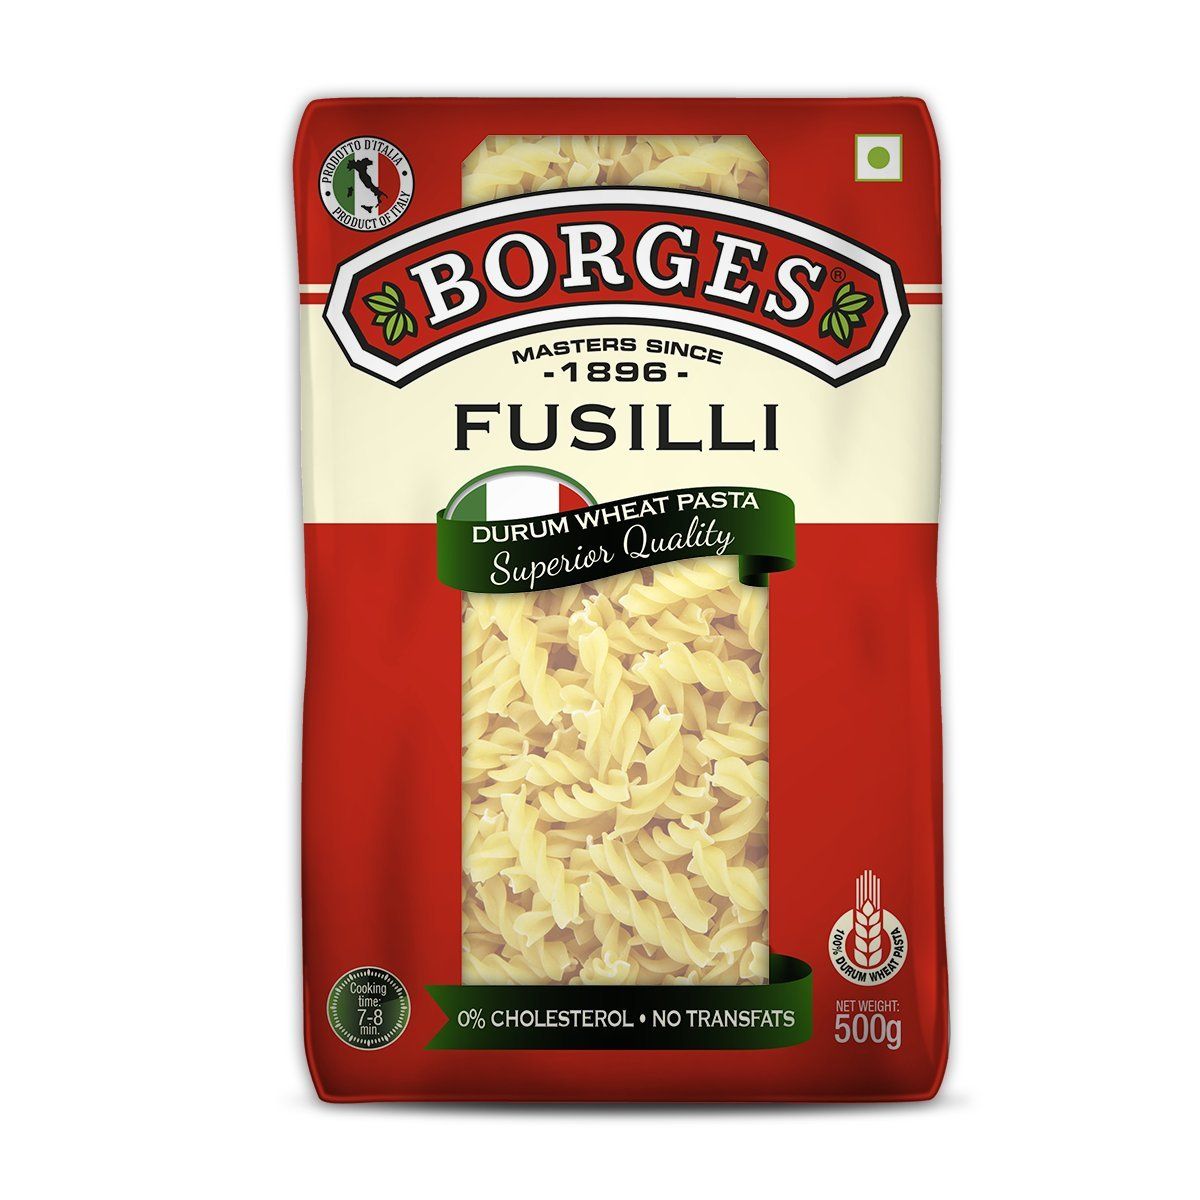 Borges Fusilli Durum Wheat Pasta Image